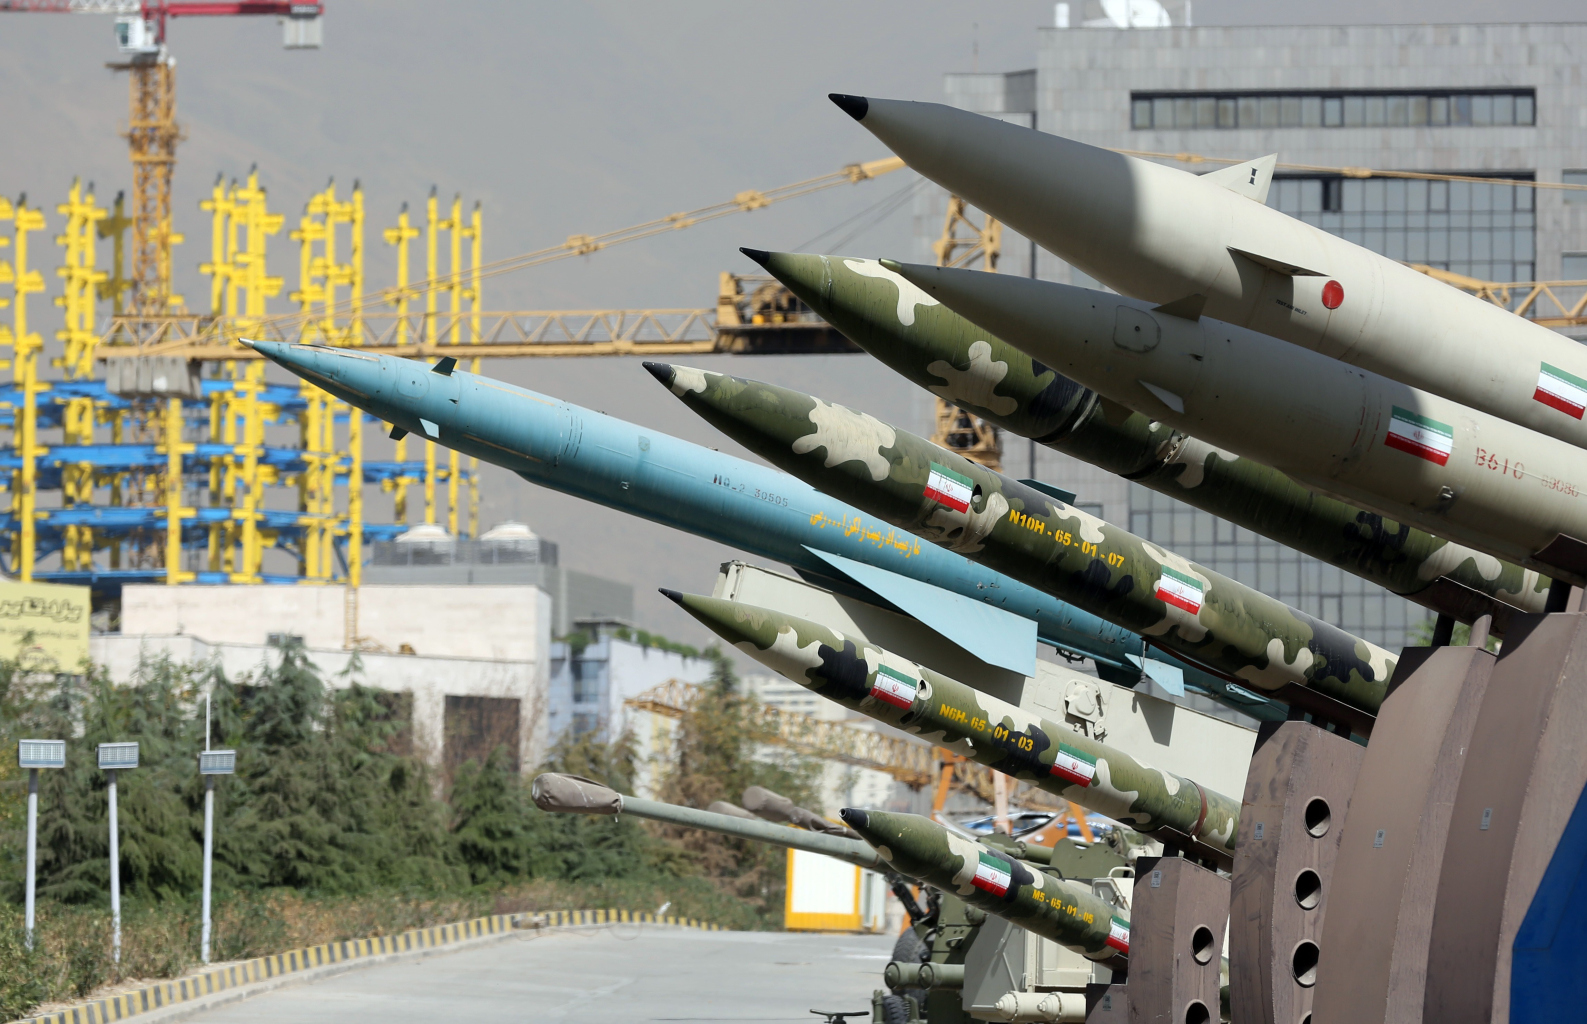 Υπηρεσία Ατομικής Ενέργειας: «Καμία ένδειξη για ανάπτυξη πυρηνικών στο Ιράν μετά το 2009»